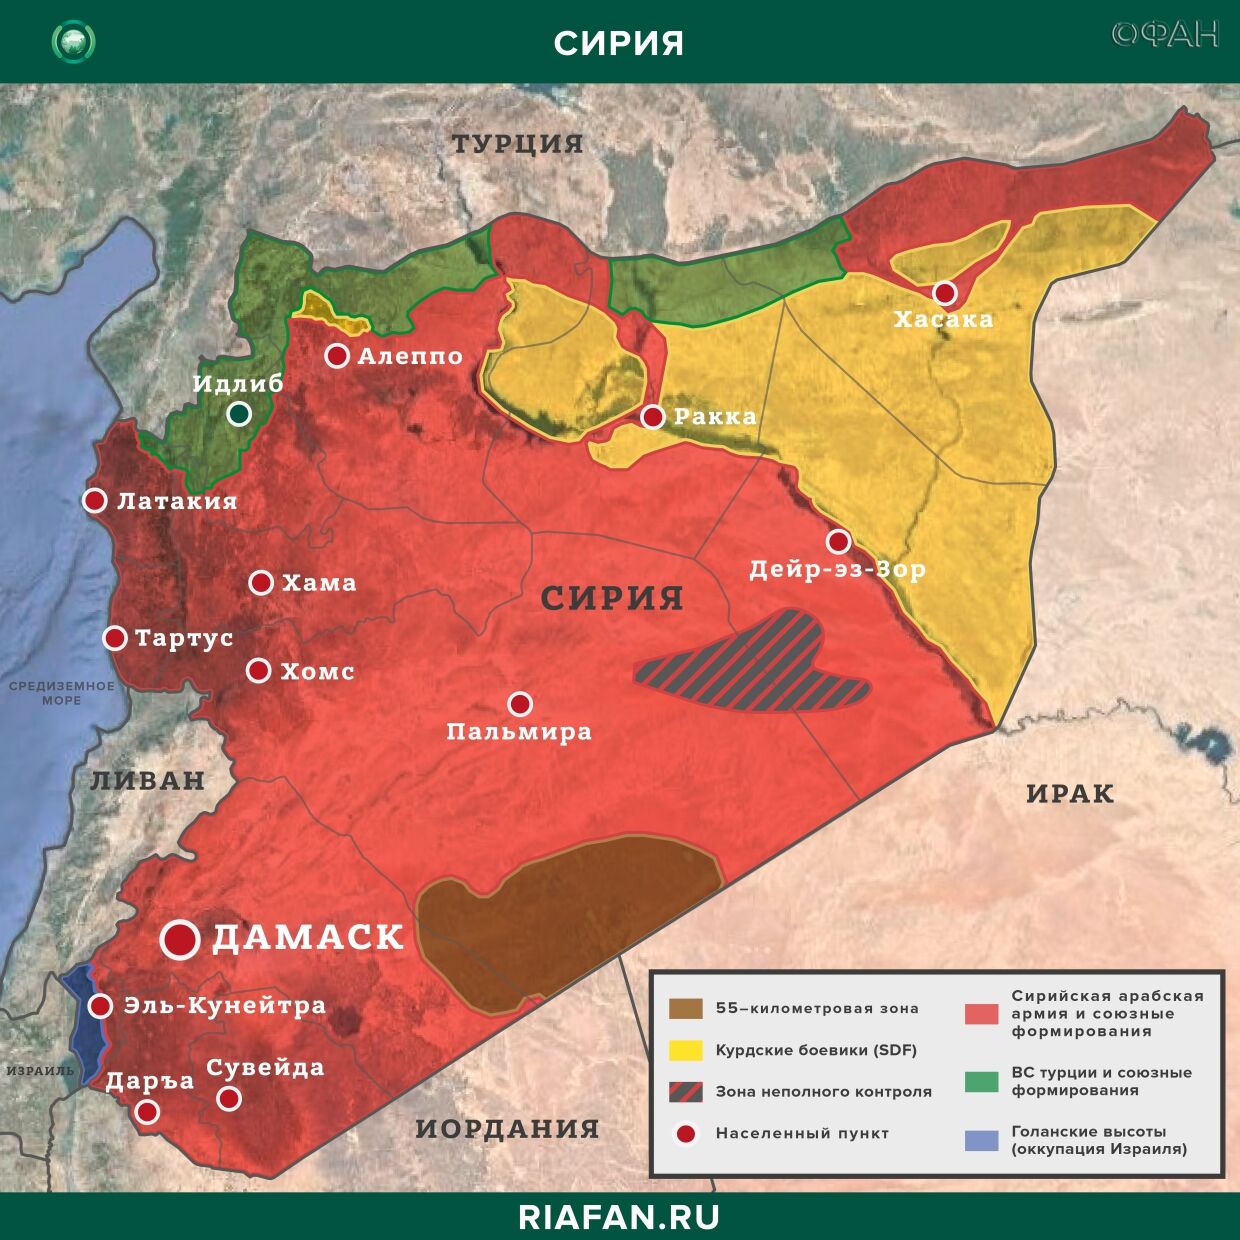 Последние новости Сирии. Сегодня 18 апреля 2020: США перебрасывают в САР солдат сирия